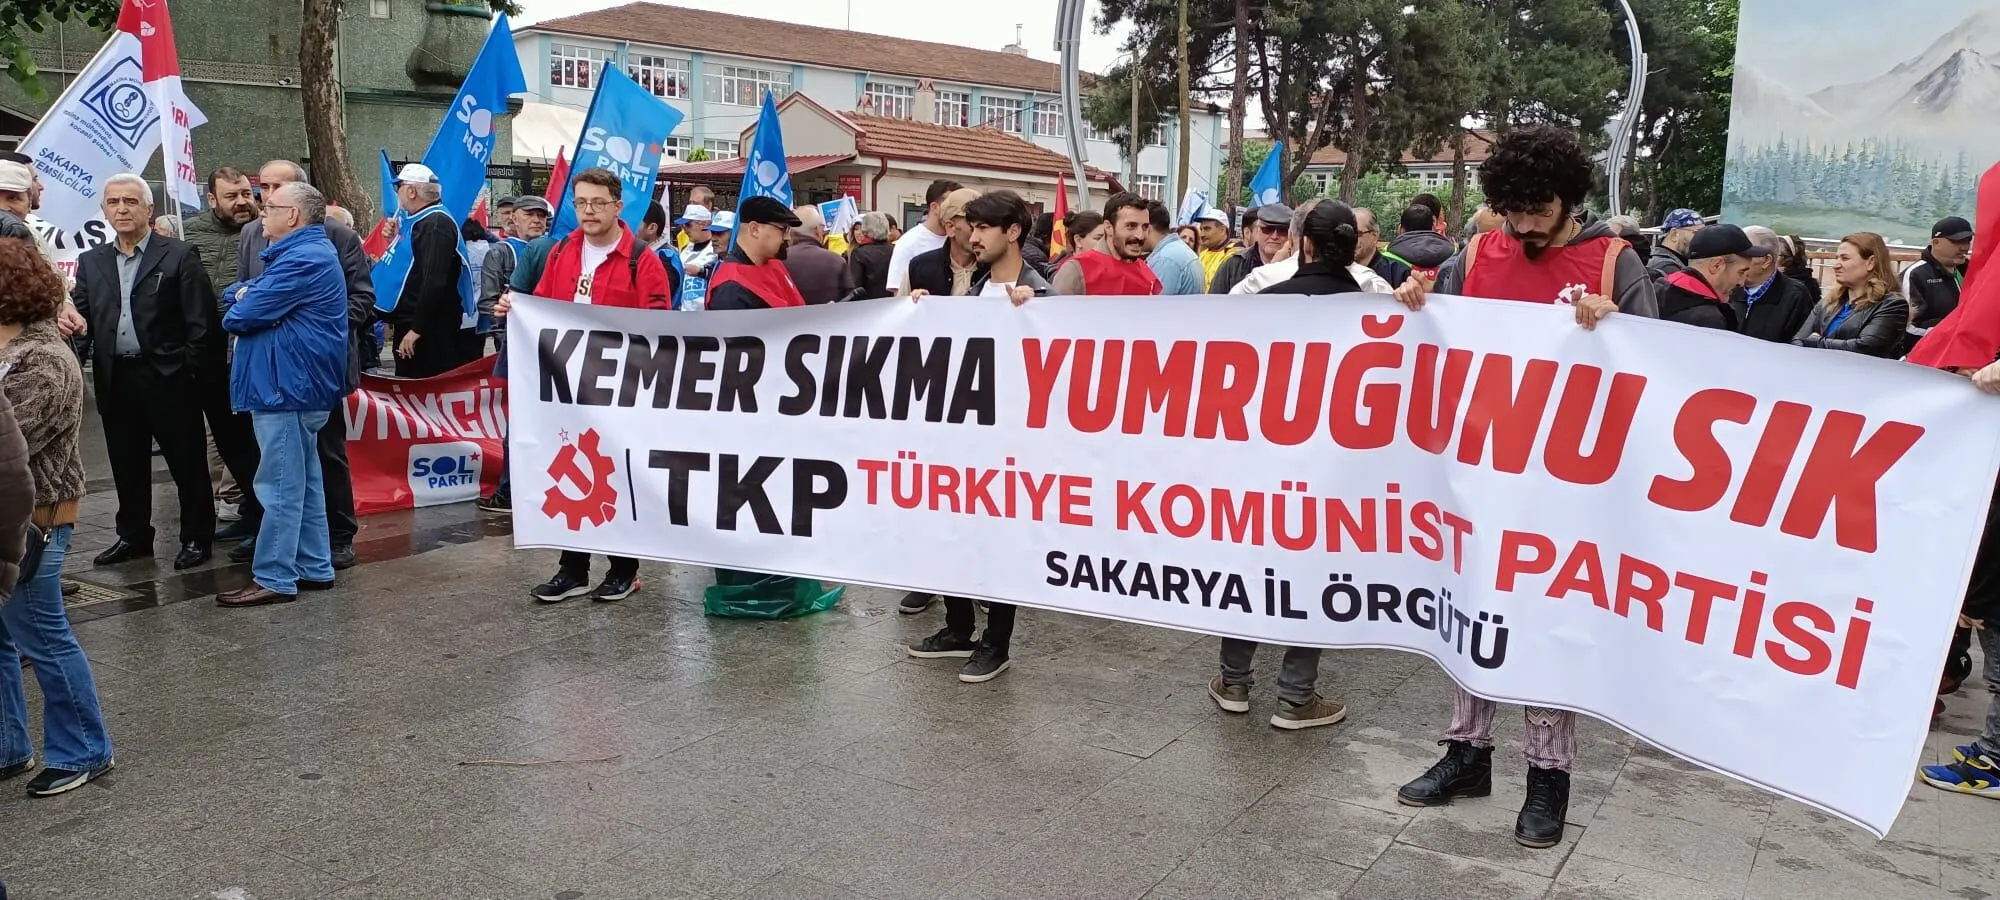 Sakarya'da 1 Mayıs yürüyüşü başladı